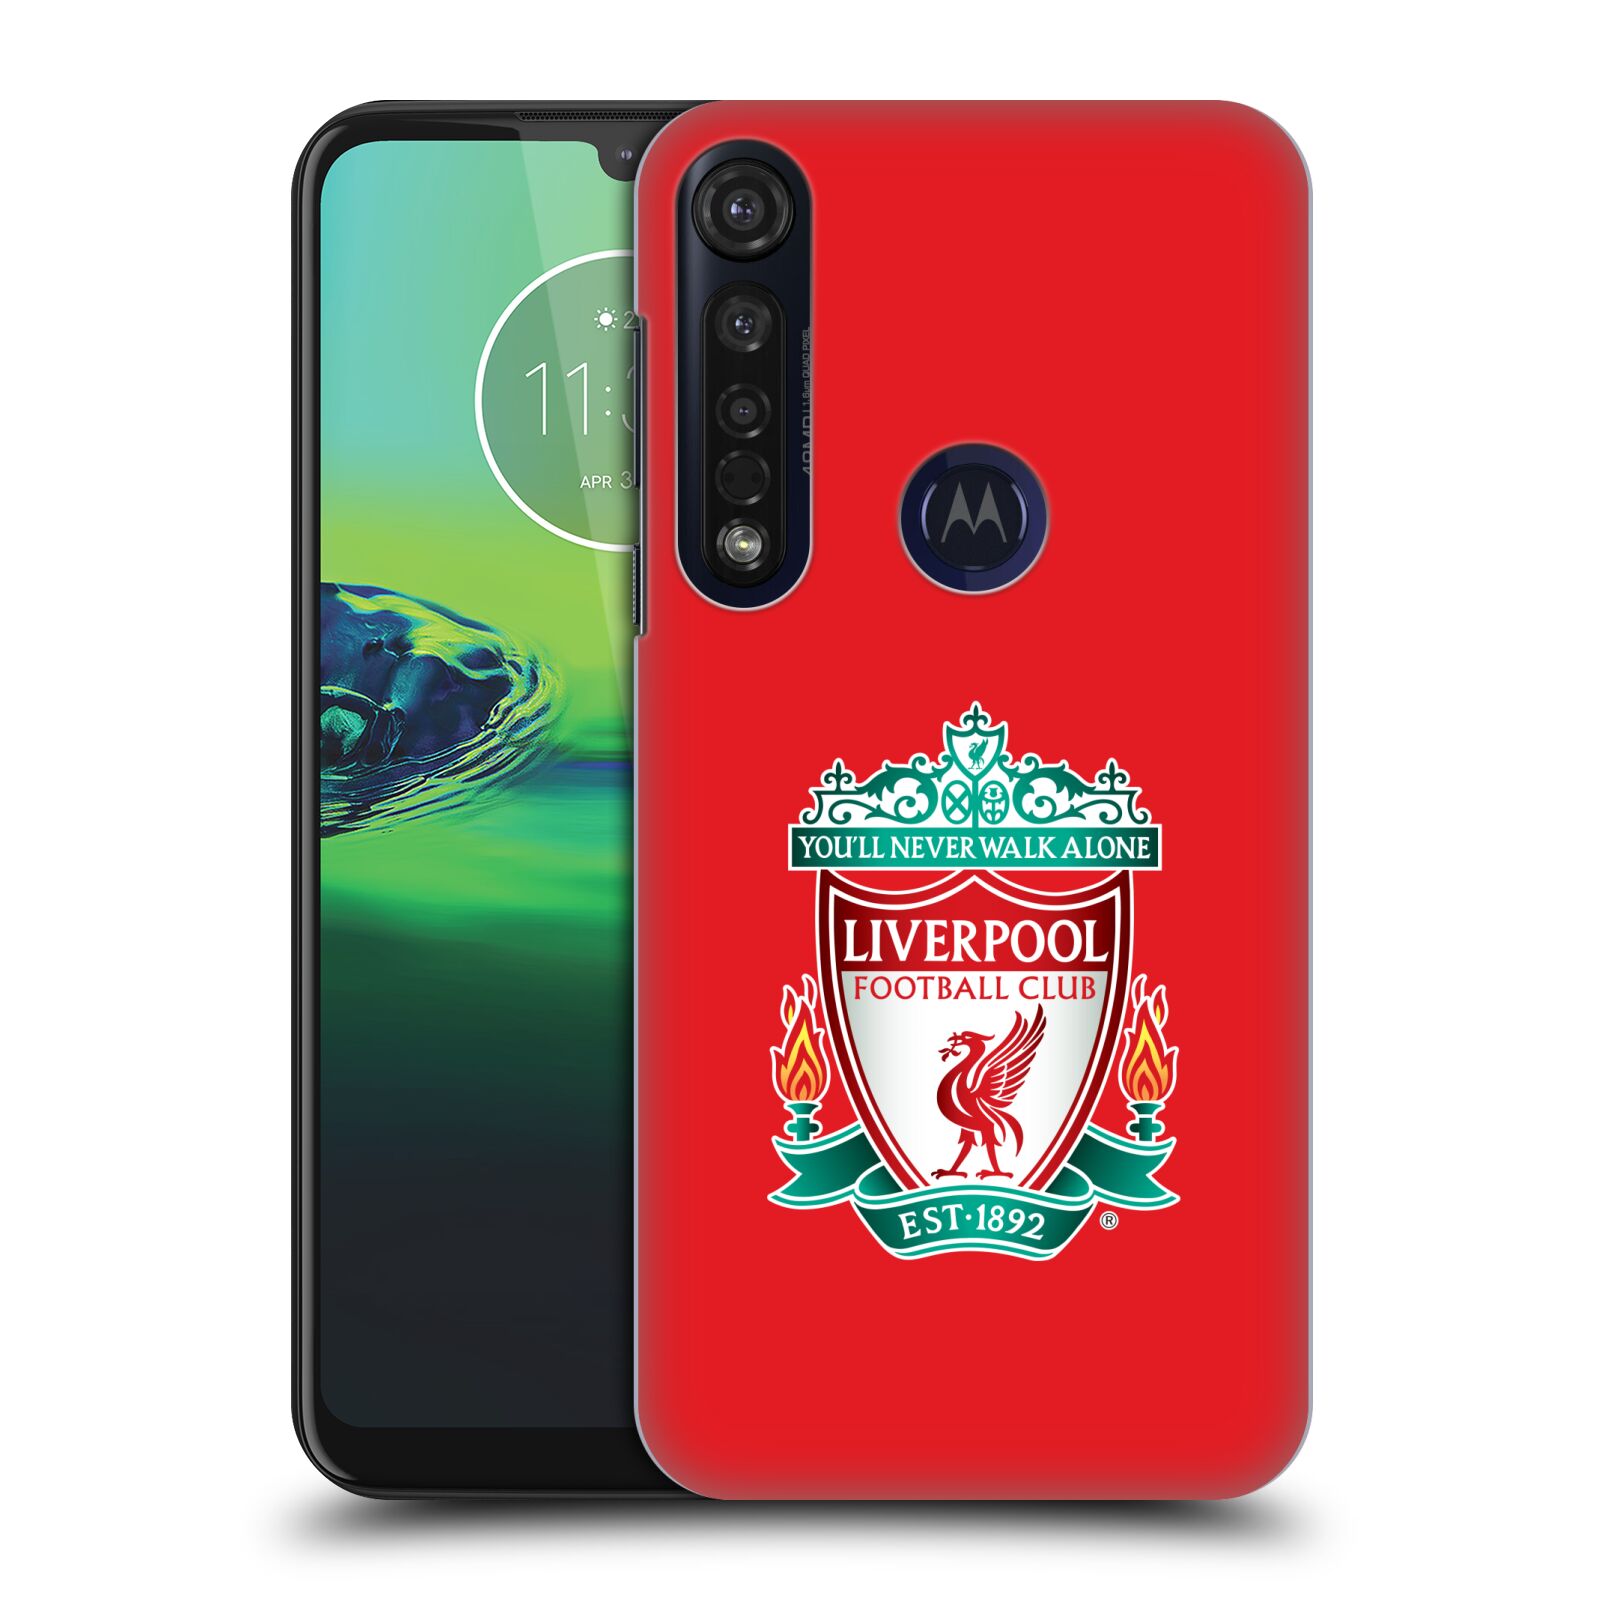 Pouzdro na mobil Motorola Moto G8 PLUS - HEAD CASE - Fotbalový klub Liverpool barevný znak červené pozadí